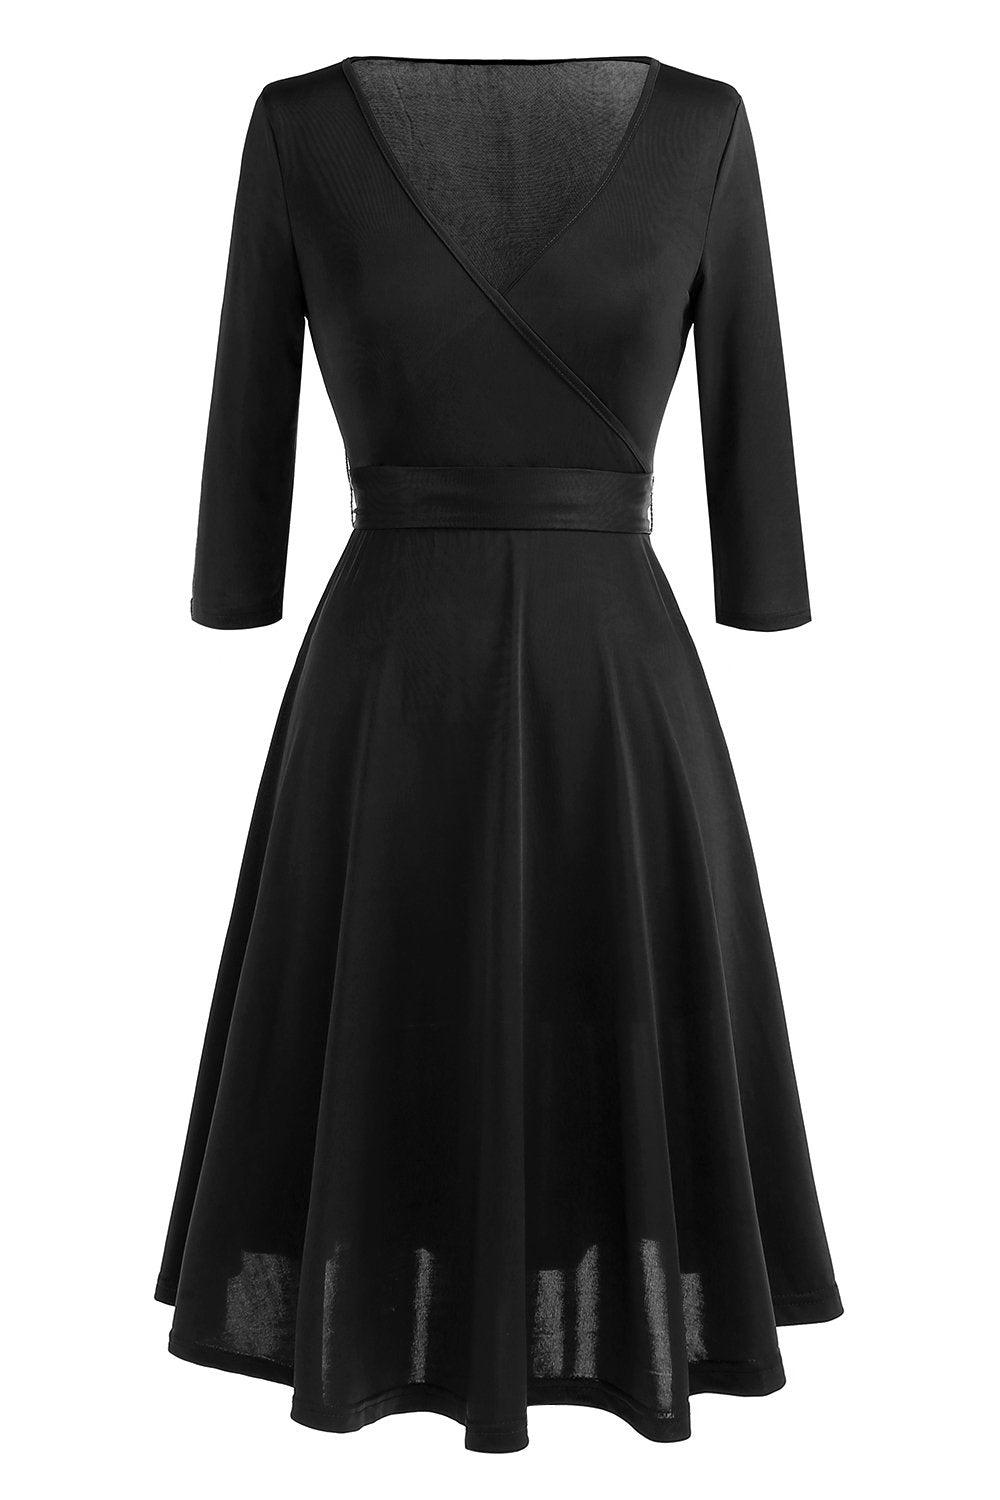 Czarna sukienka Vintage 1950s z szarfą